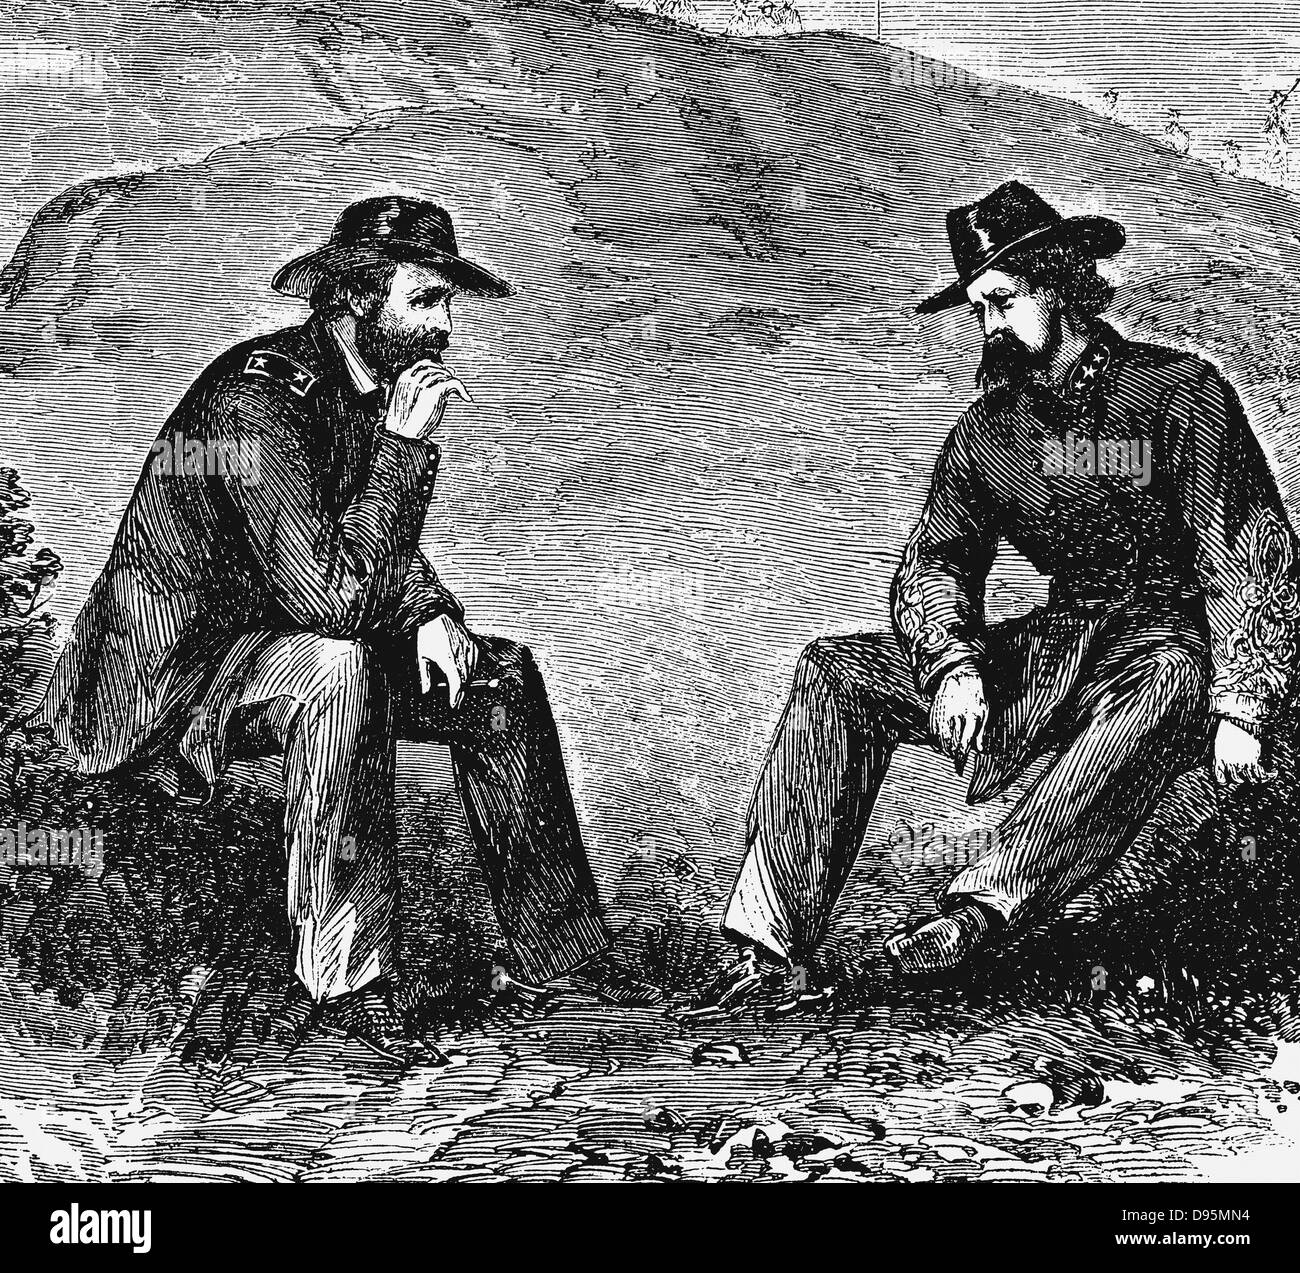 Allgemeine US Grant (links) verhandelt mit General John Clifford Pemberton (1814-1881) Konföderierten (südlichen) Commander für die Überlassung von Vicksburg. Amerikanischer Bürgerkrieg 1861-1865. Gravur. Stockfoto